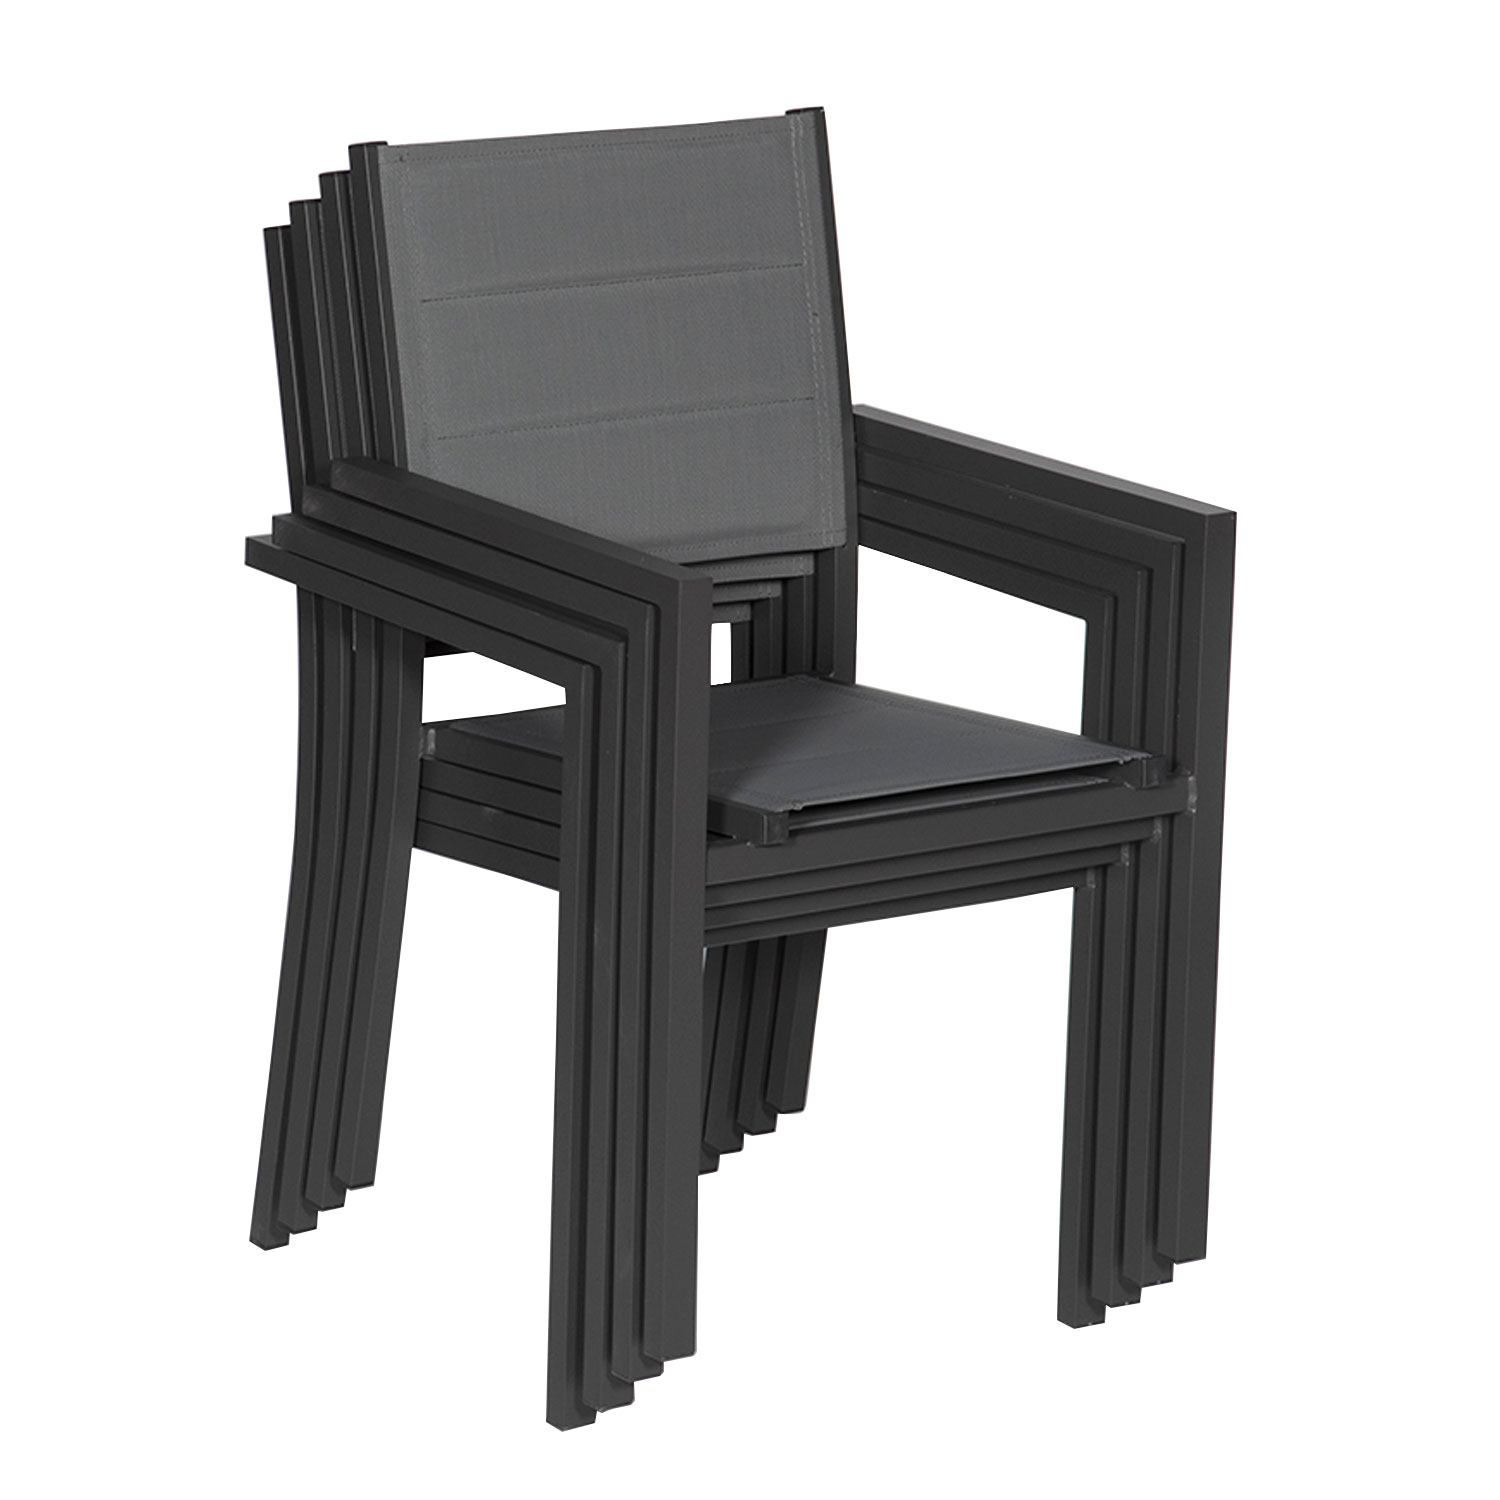 Satz von 8 gepolsterten Stühlen aus anthrazitfarbenem Aluminium - graues Textilene